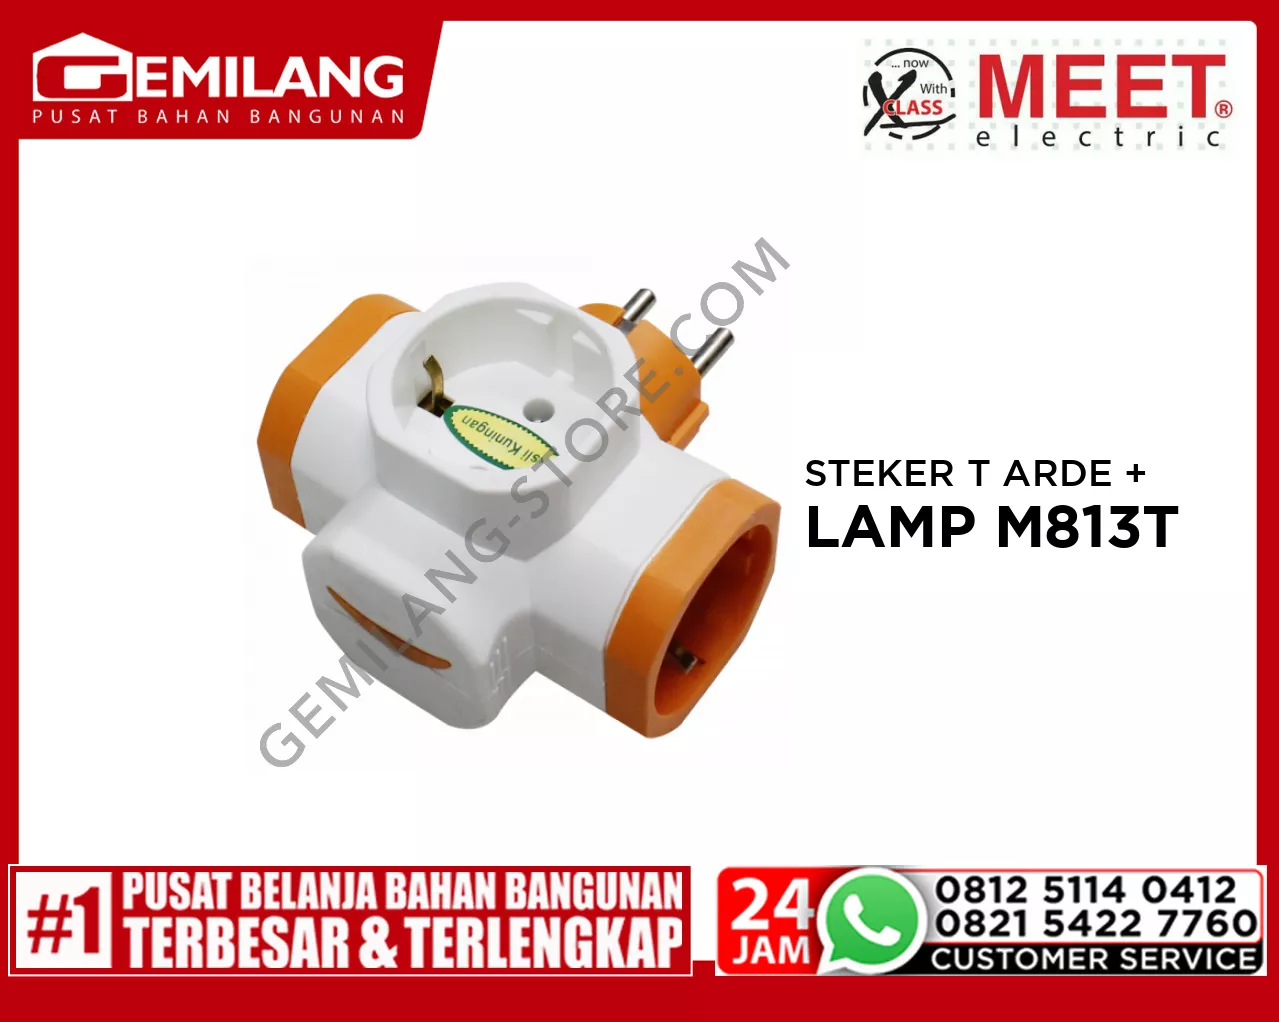 MEET STEKER T ARDE  + LAMP M 813 T